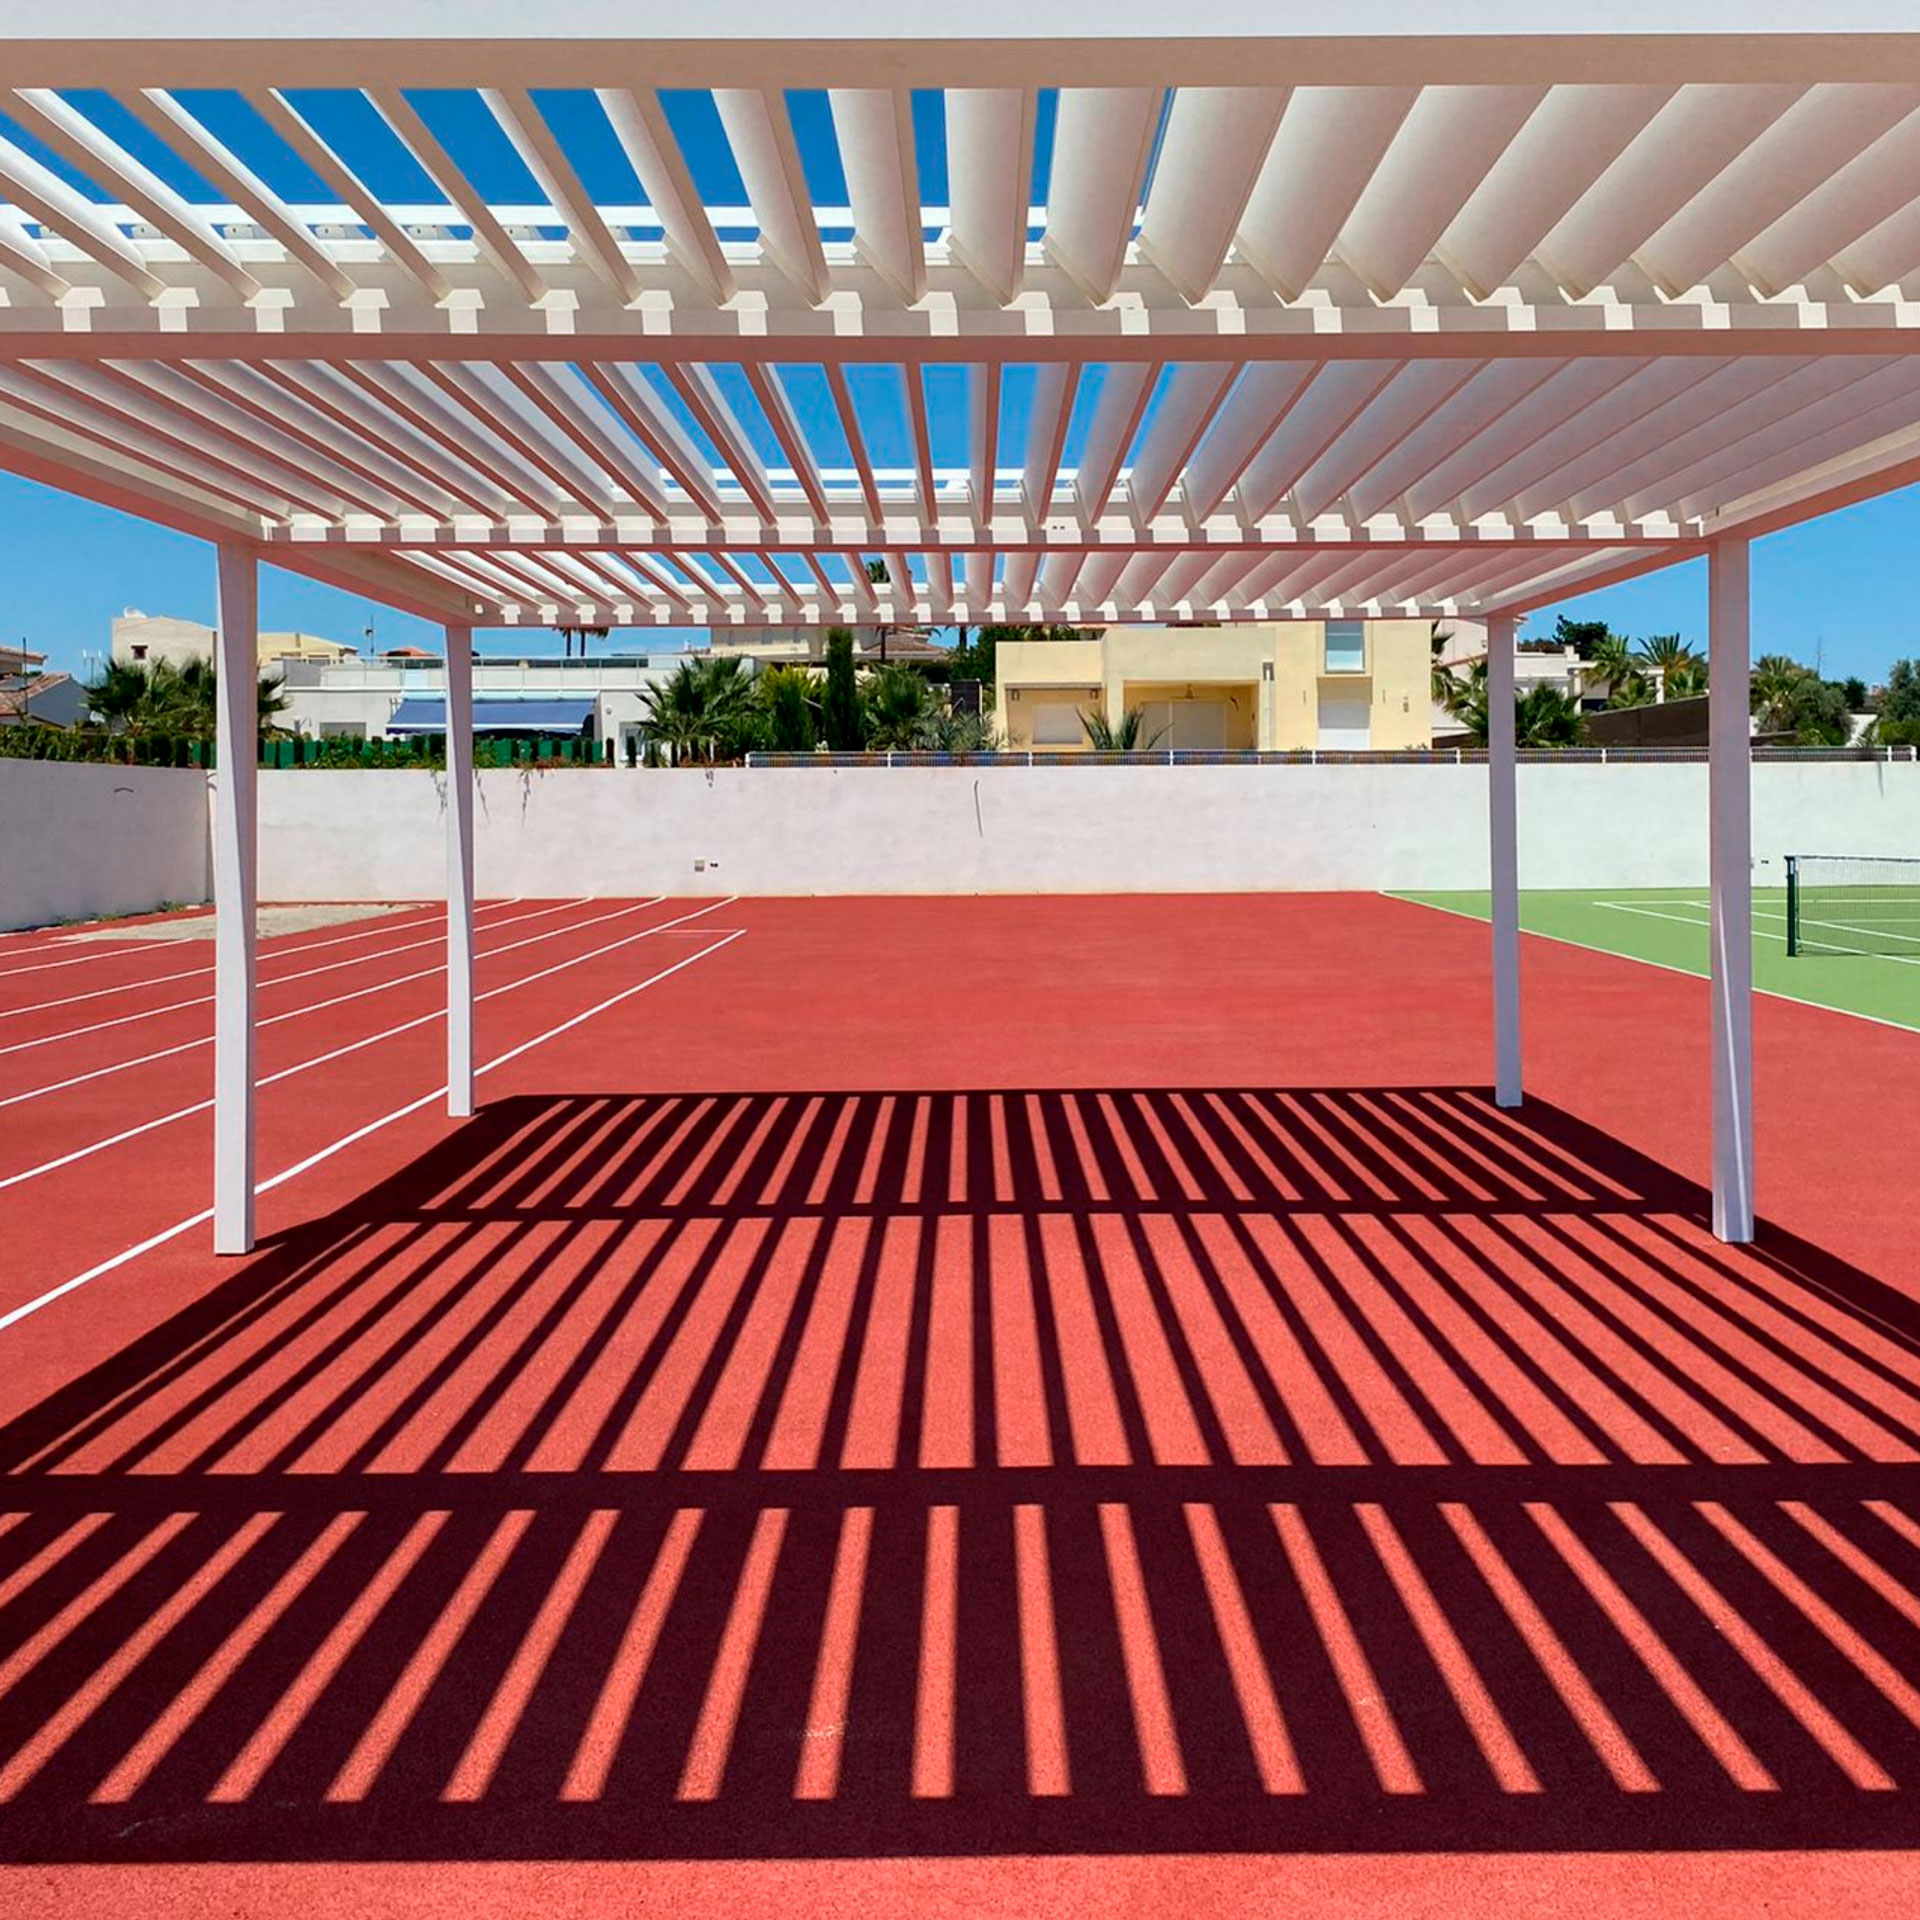 Pérgola Bioclimática en zona deportiva en Vera, Almería.